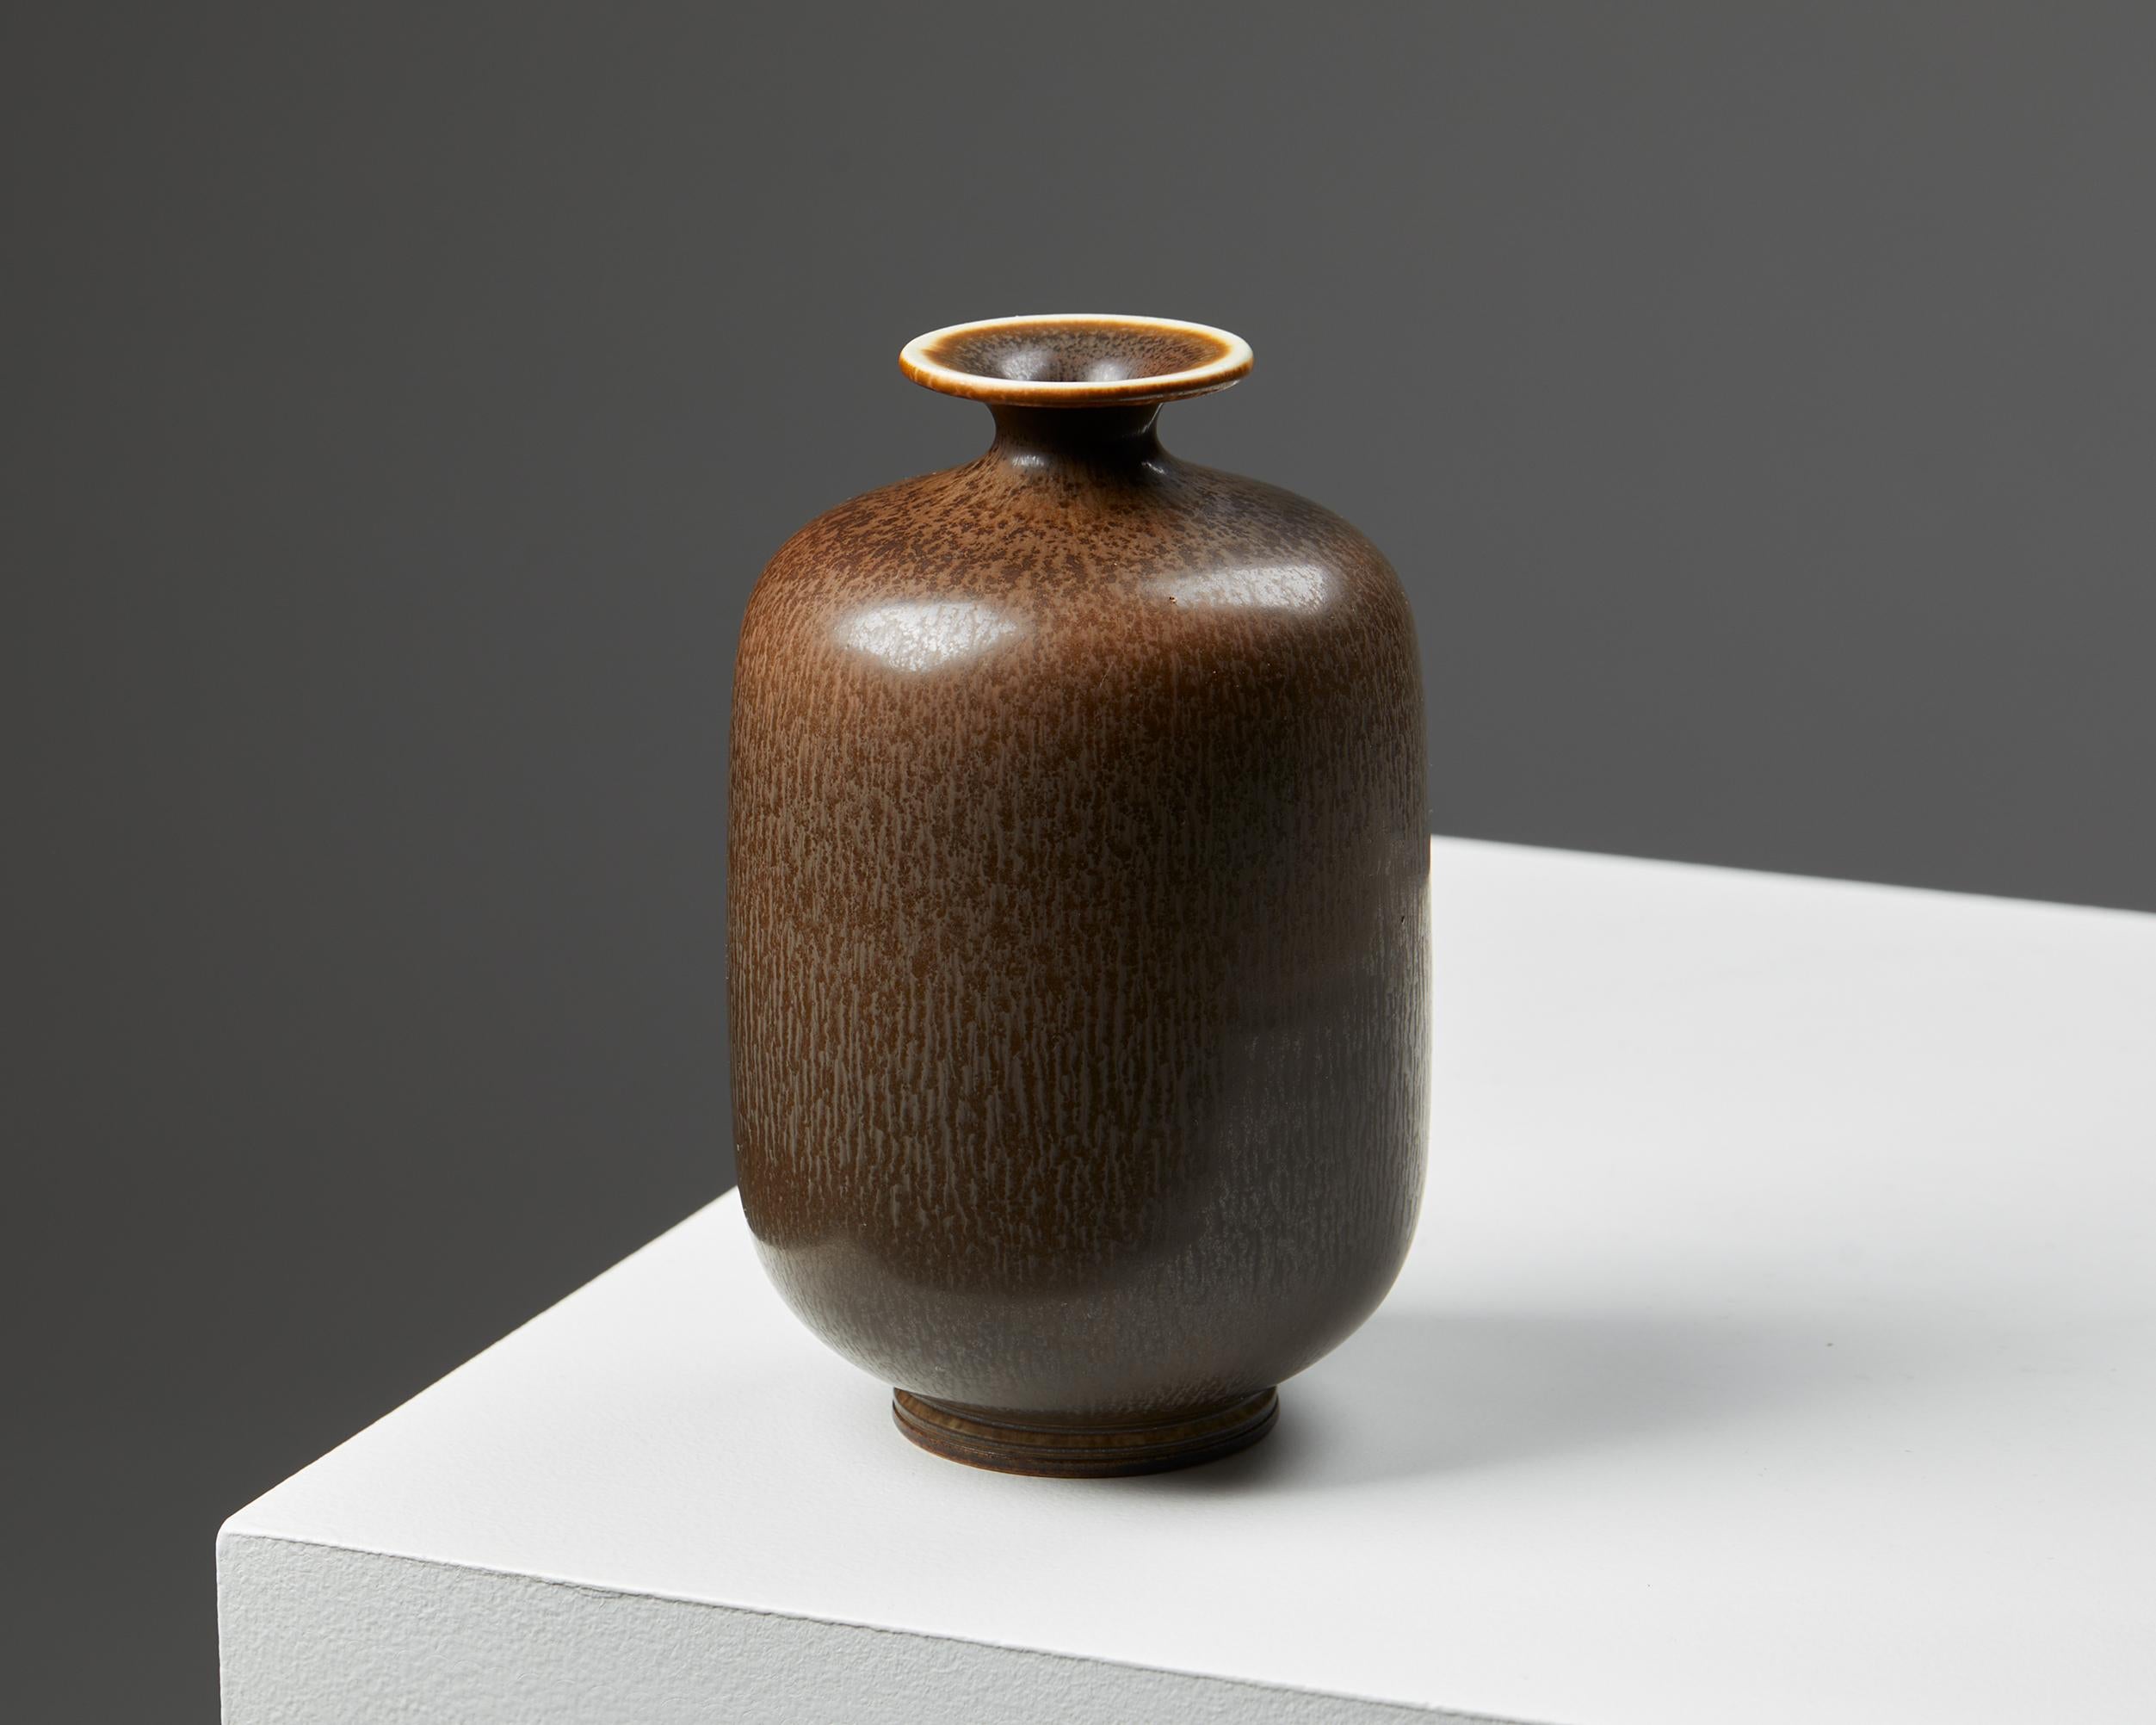 Vase designed by Berndt Friberg for Gustavsberg,
Sweden, 1950s.
Stoneware.

Signed.

Measures: Height: 15 cm / 6